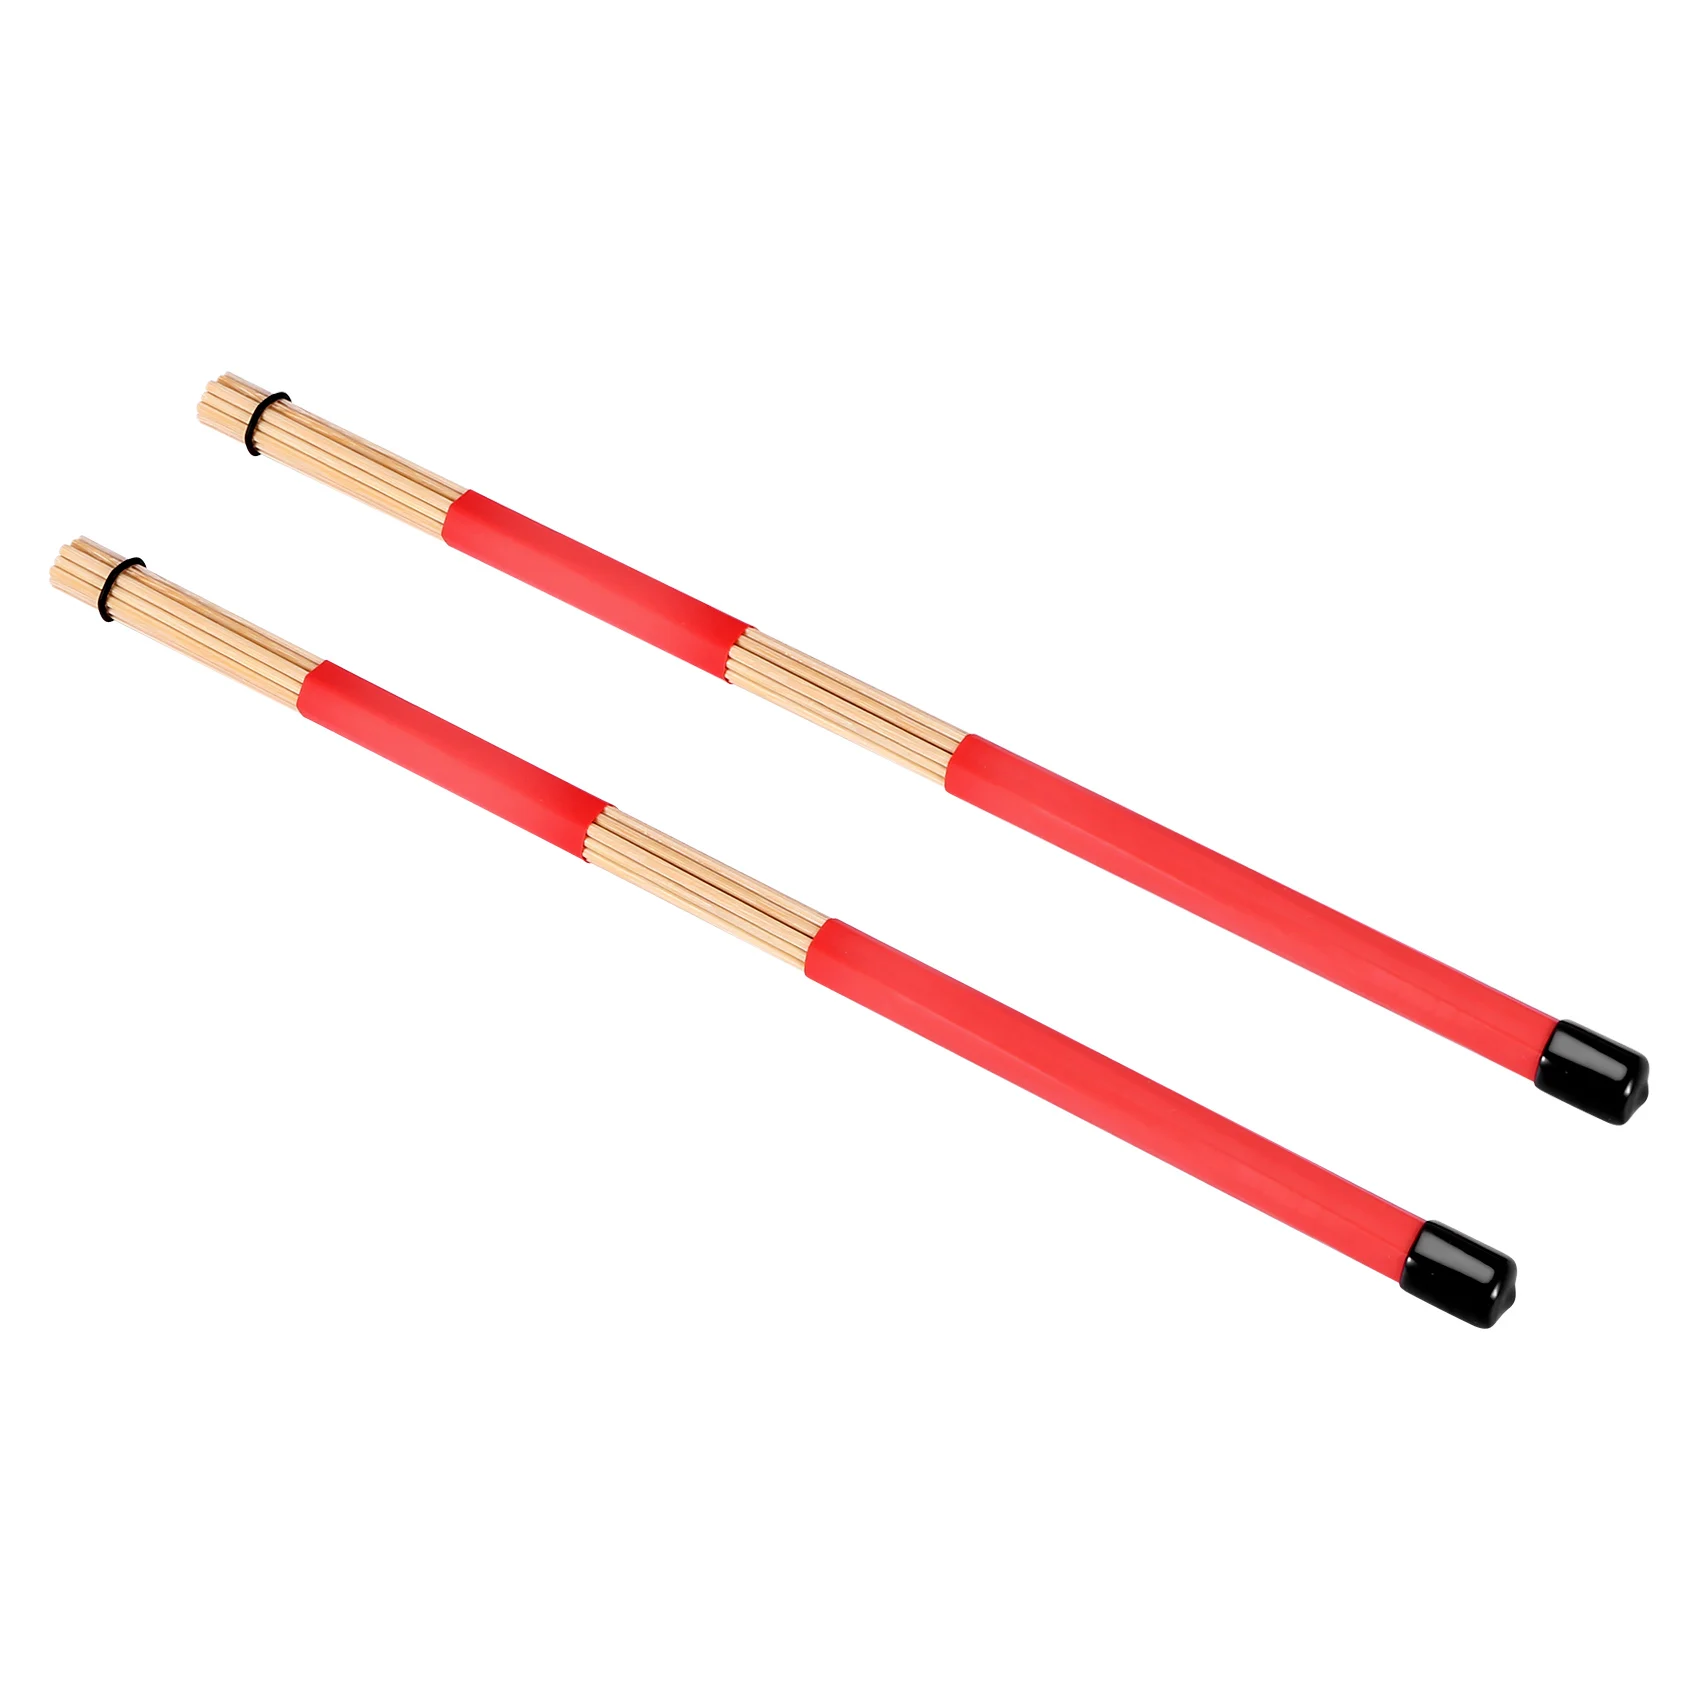 1 пара барабанных щеток с бамбуковым стержнем 40 см, палочки для джазовой народной музыки (красные)